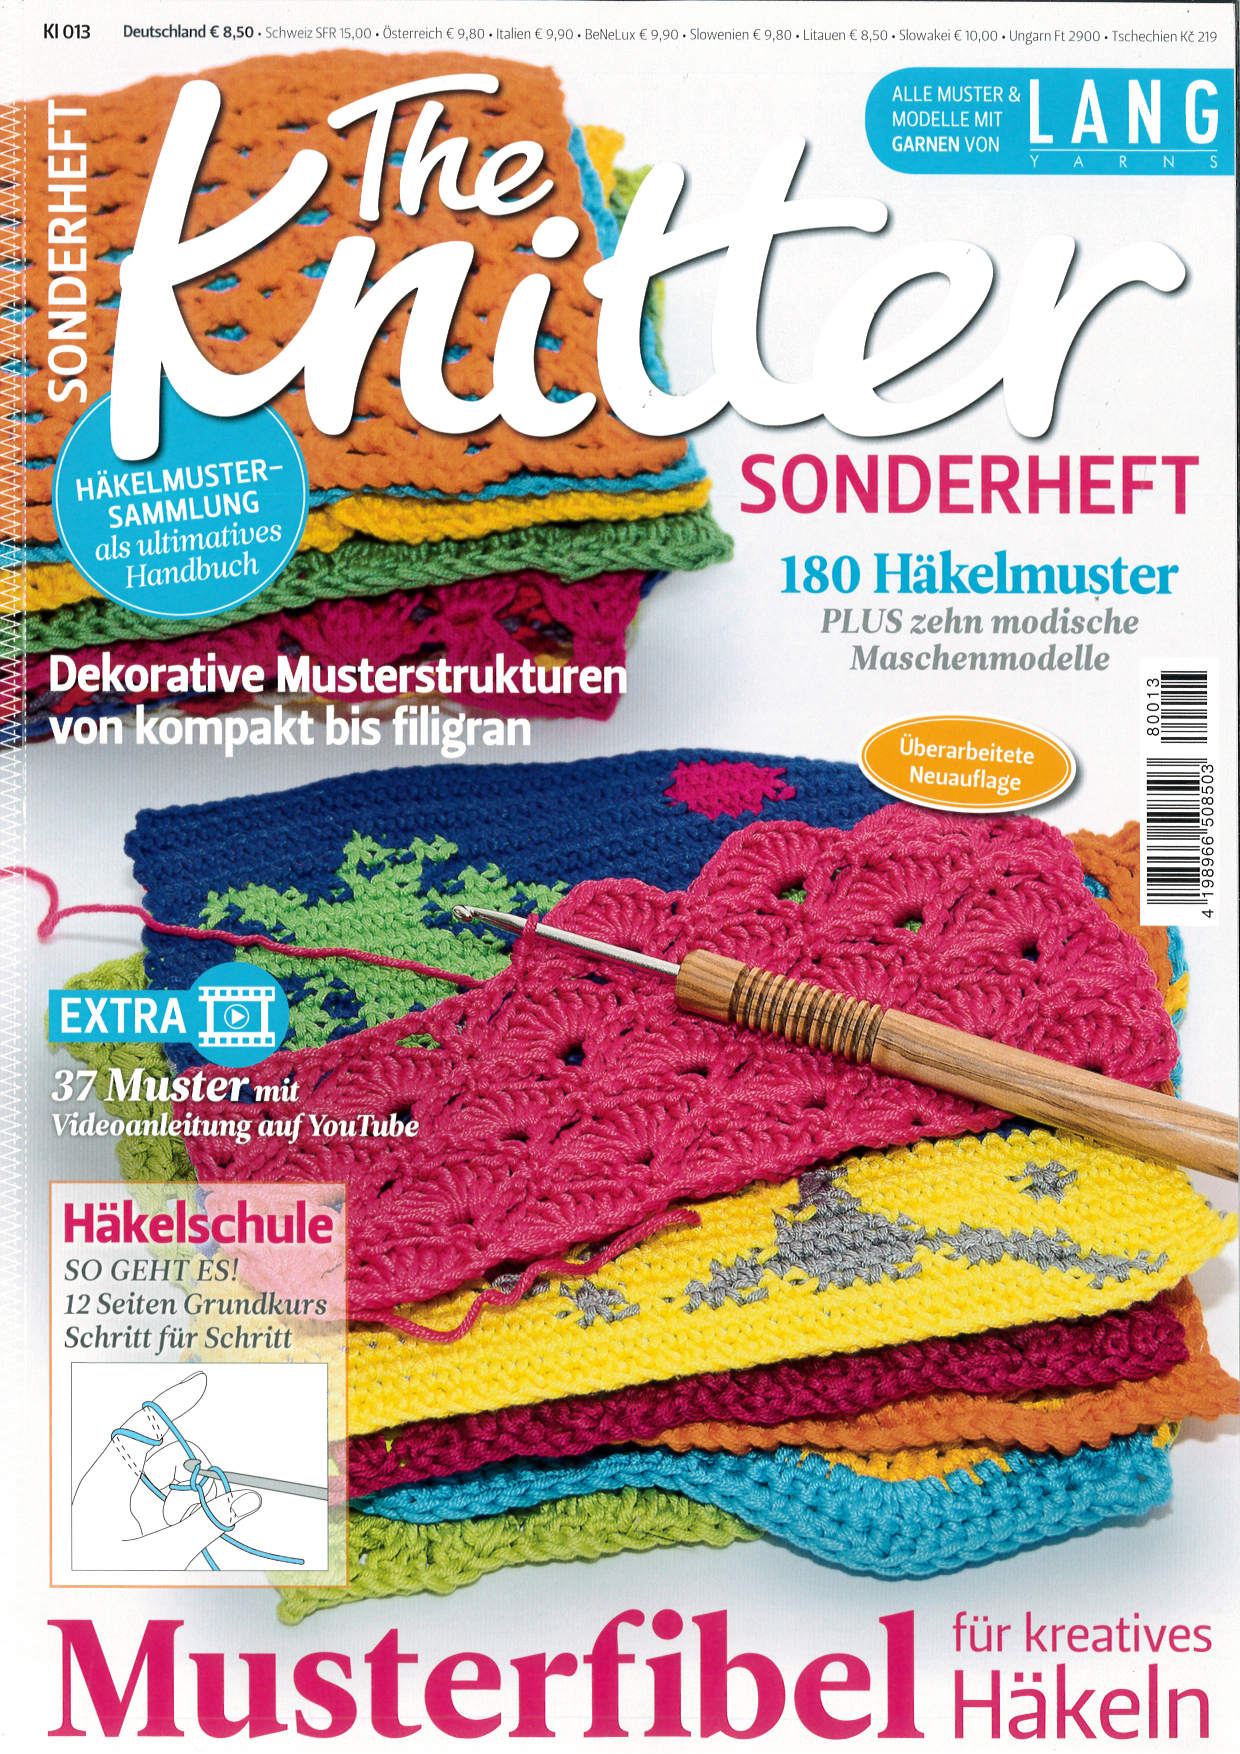 The Knitter Sonderheft Nr. KI 013 - Musterfibel